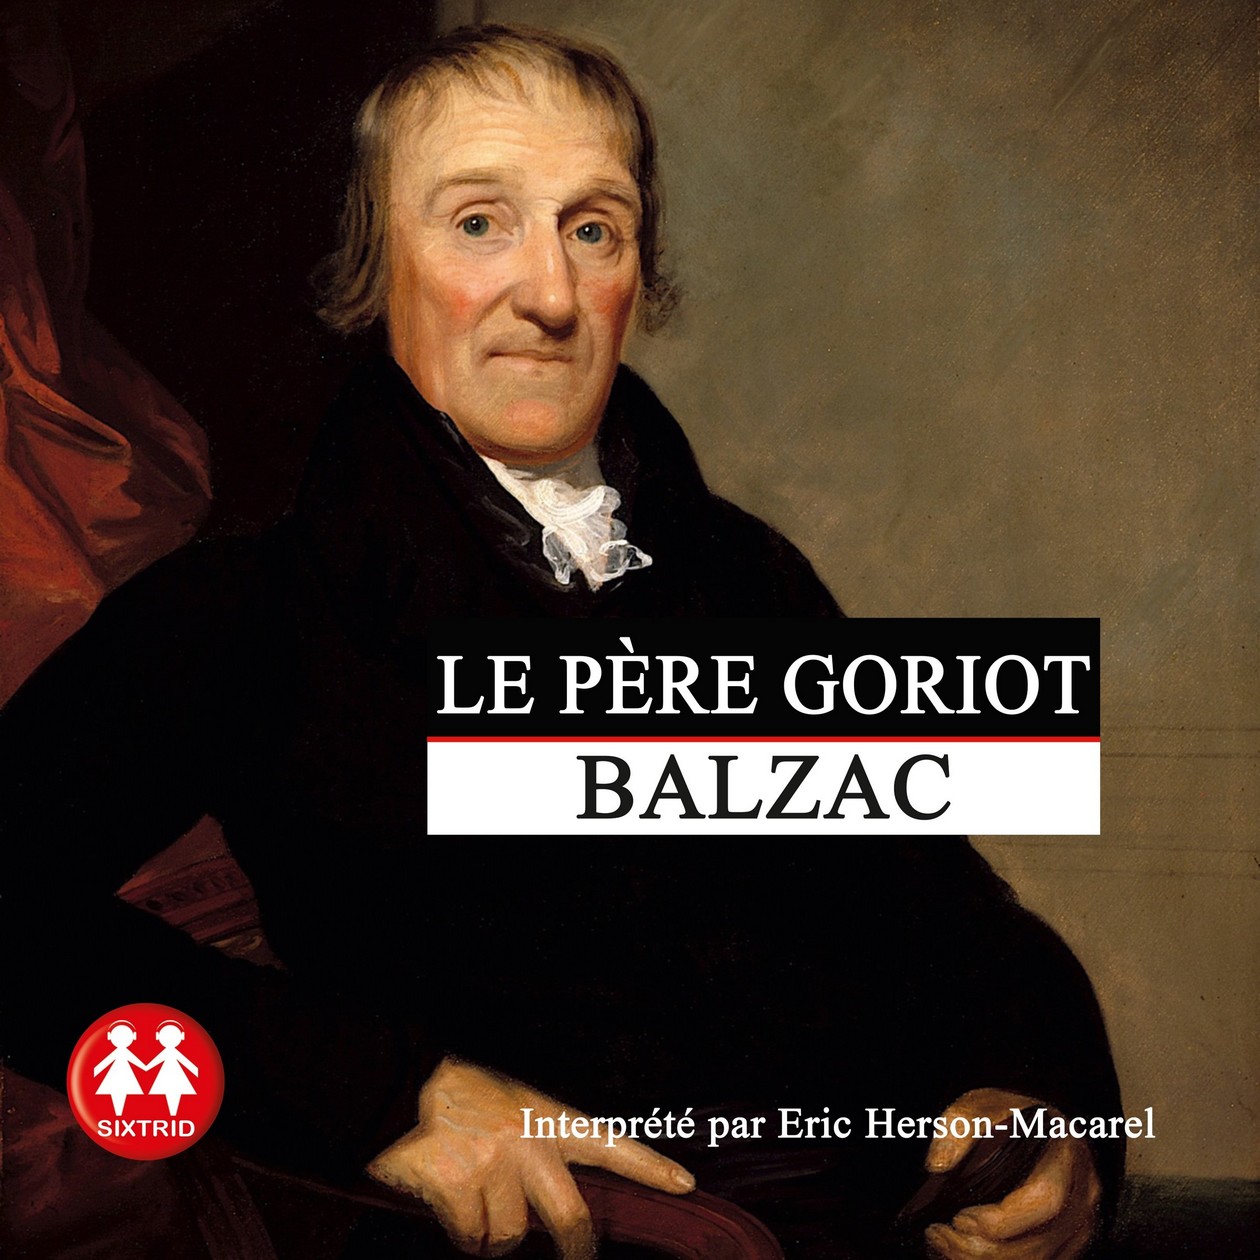 Audiobook / Livre audio : Balzac, Le père Goriot. Lu par Éric Herson-Macarel (8h34)